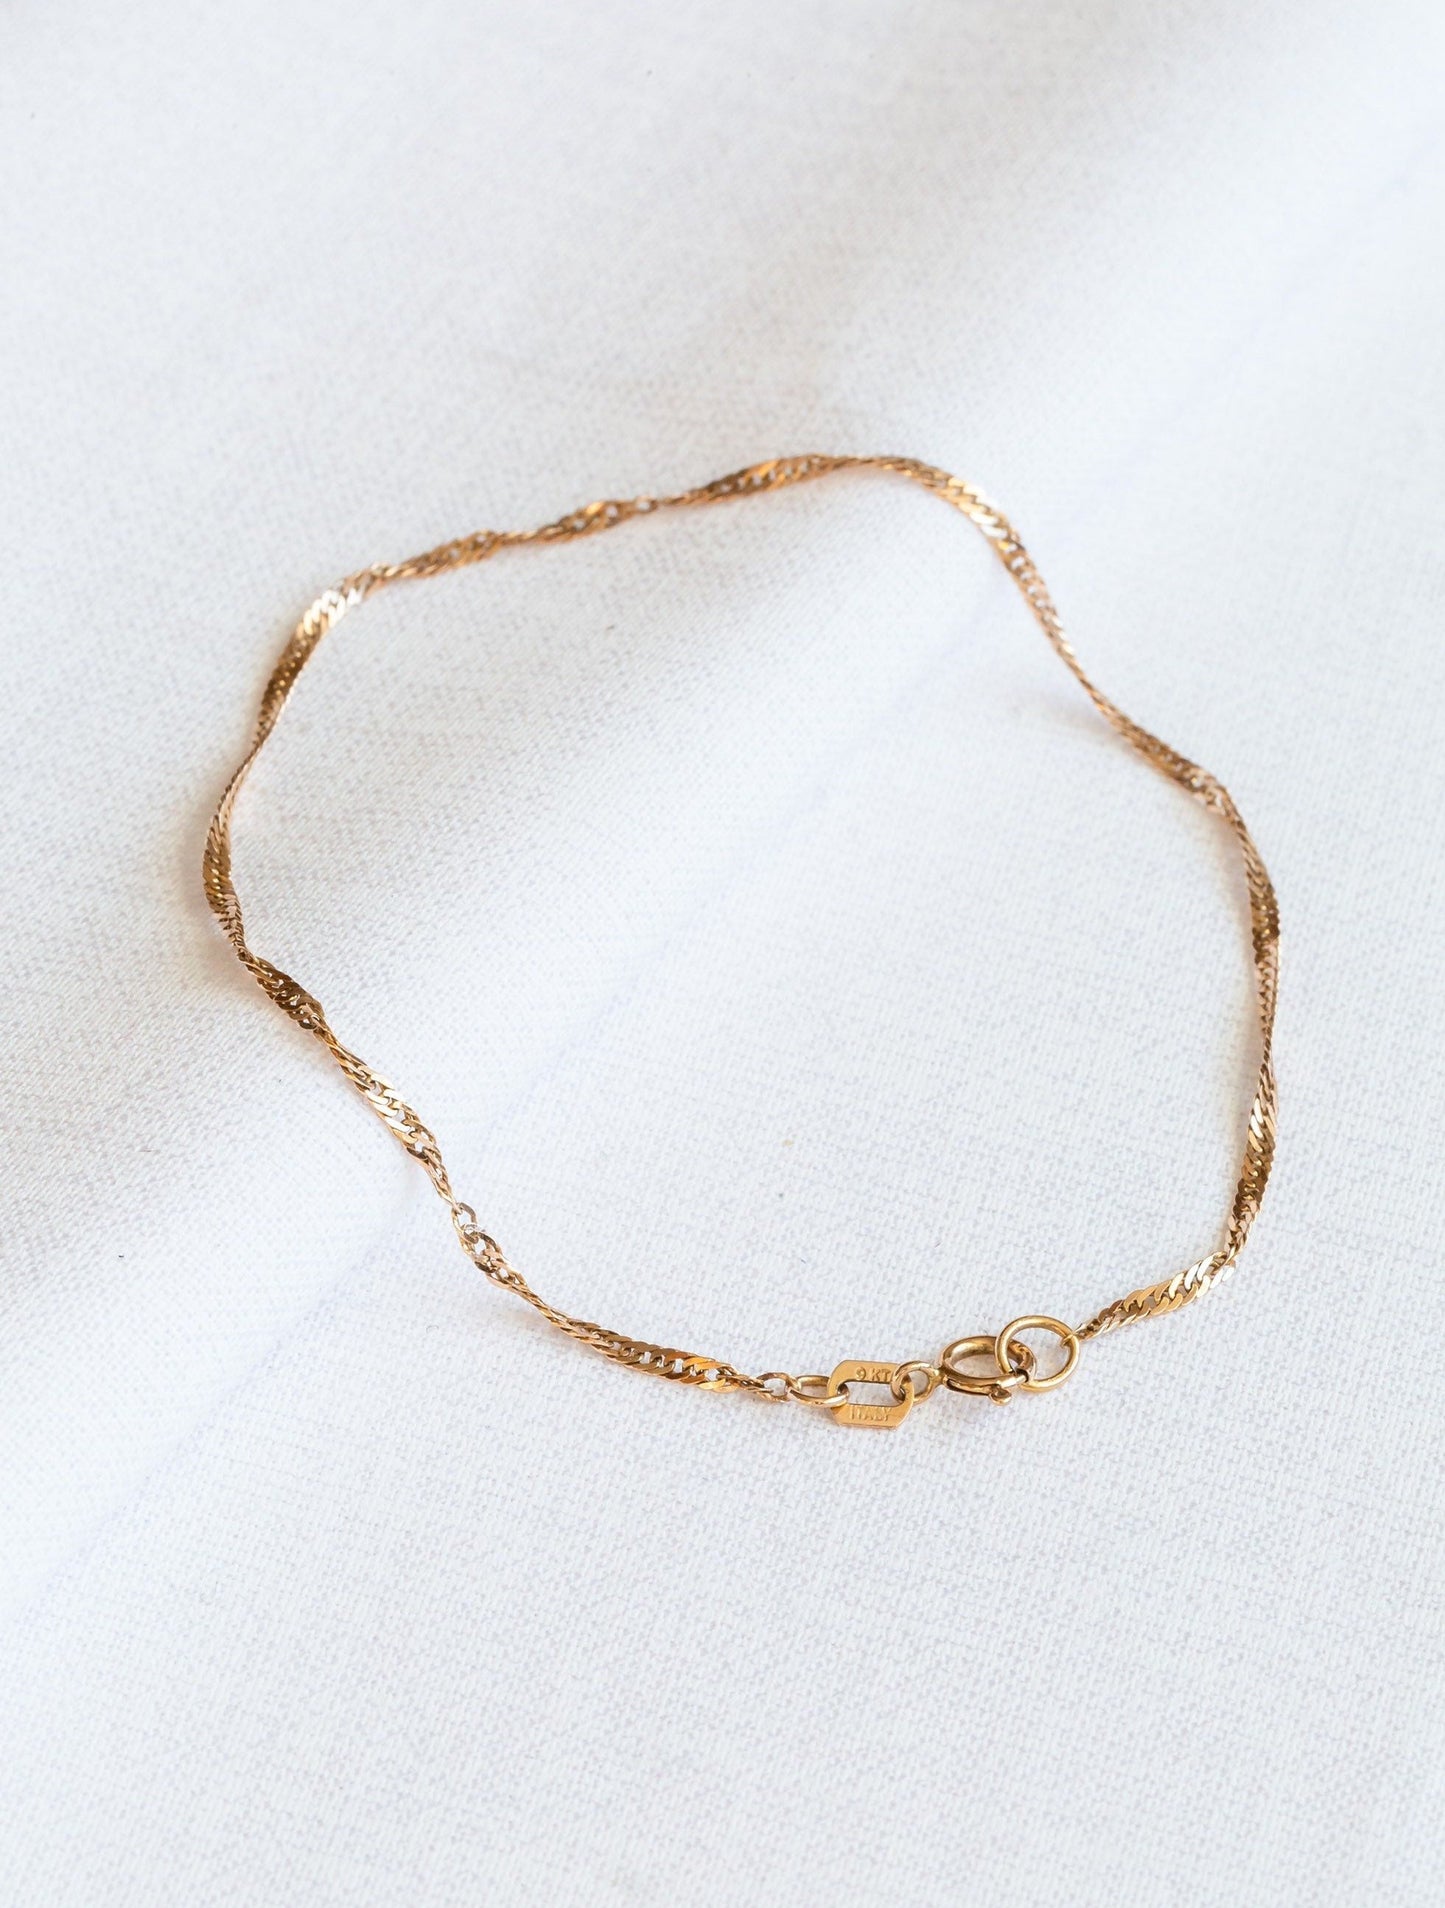 Vintage 9ct Gold Twisted Link Bracelet